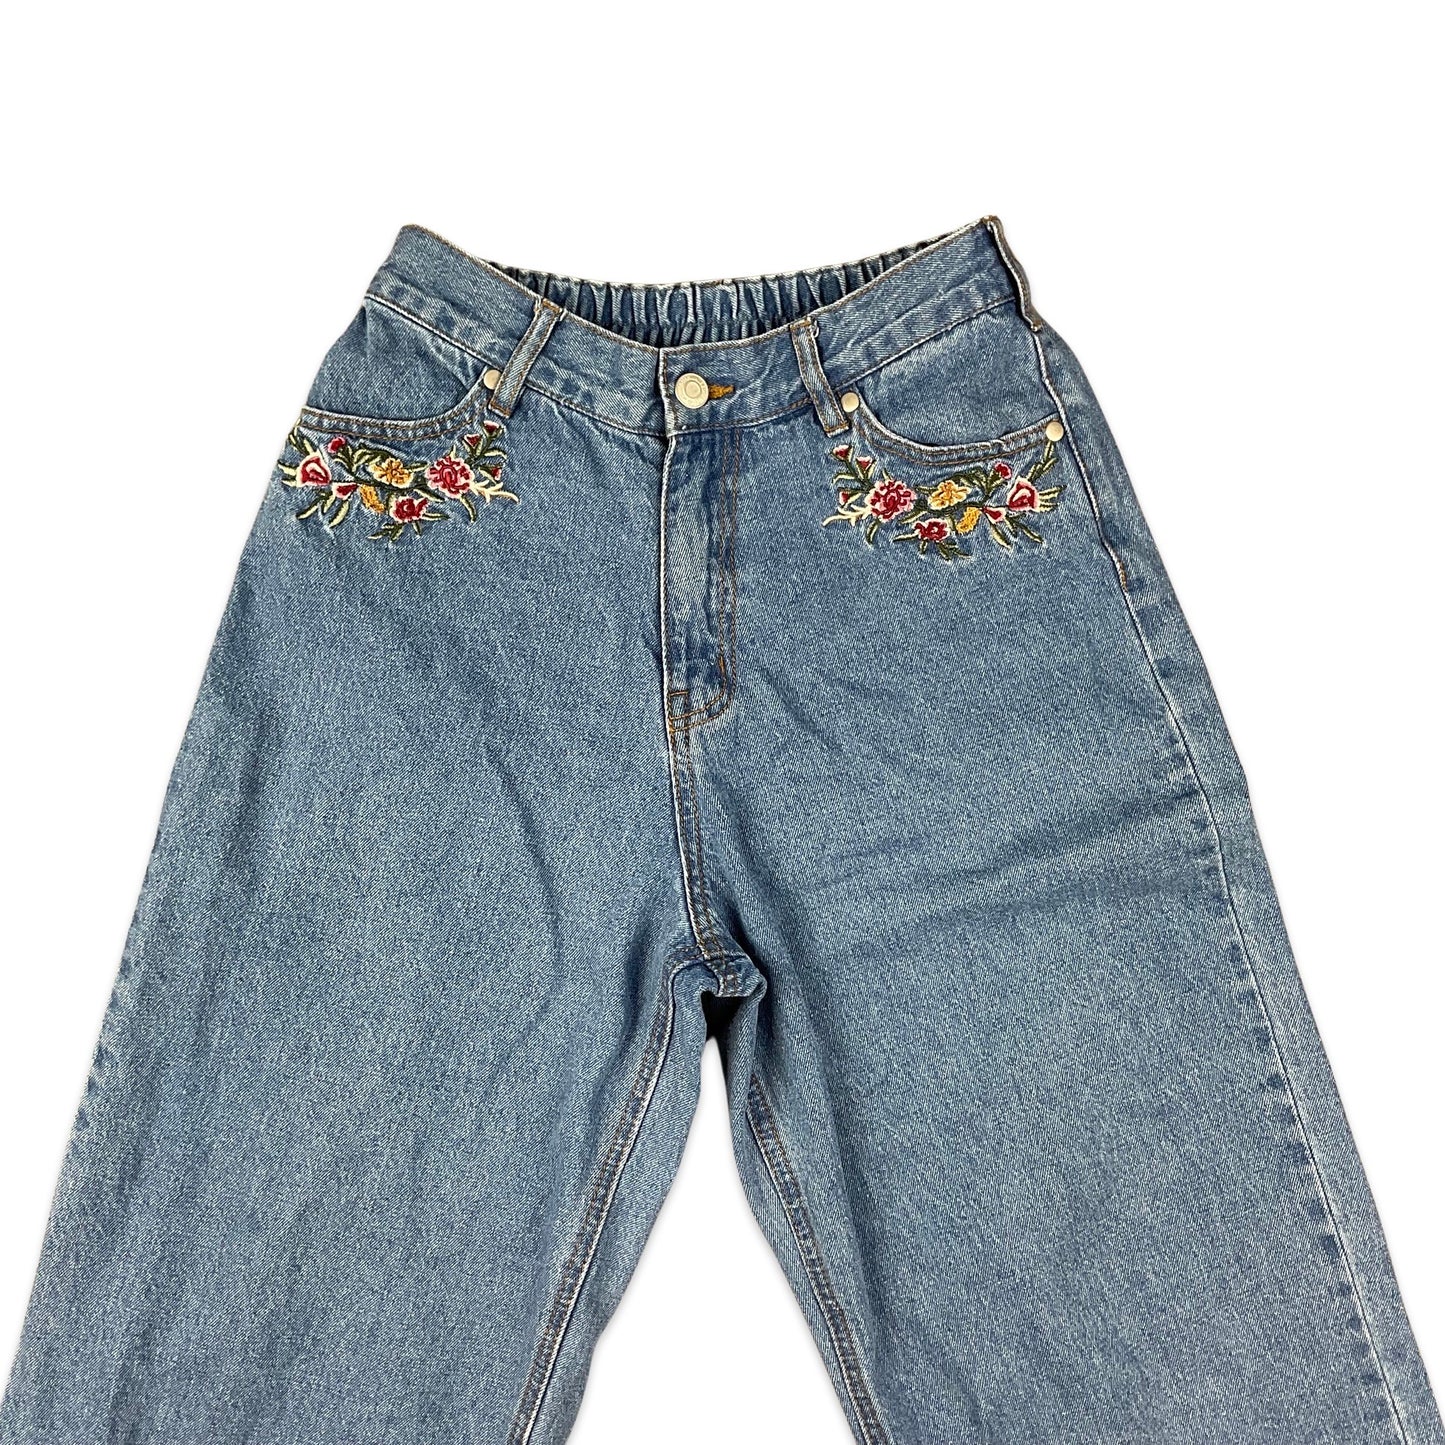 Vintage 80s Floral Embroidered Blue Wide Leg Jeans 6 8 10 12